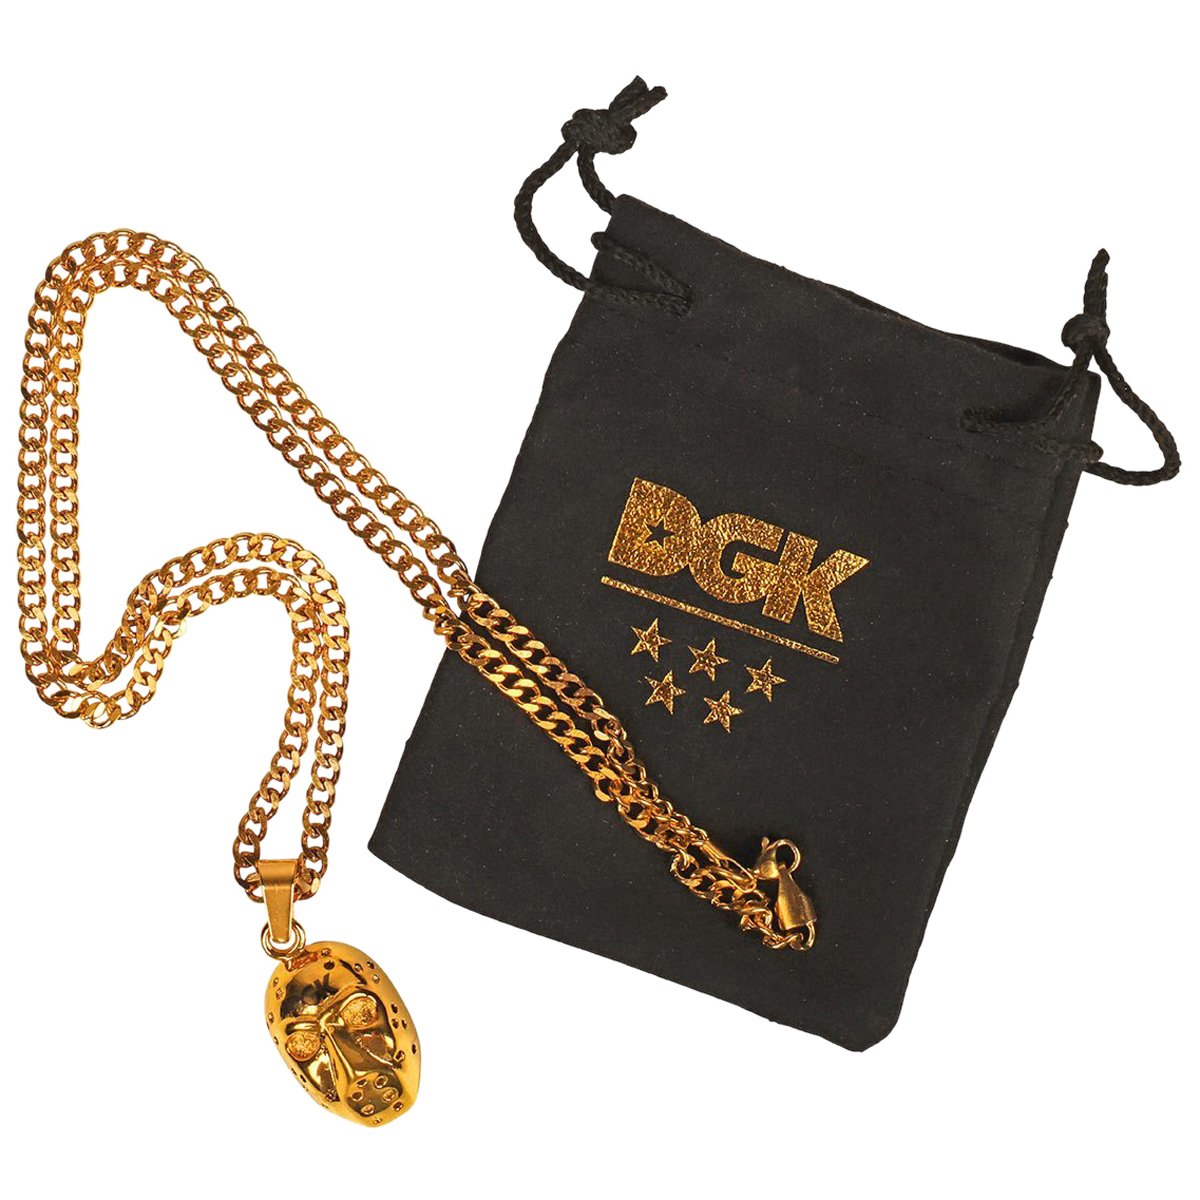 DGK Masked Necklace - Gold